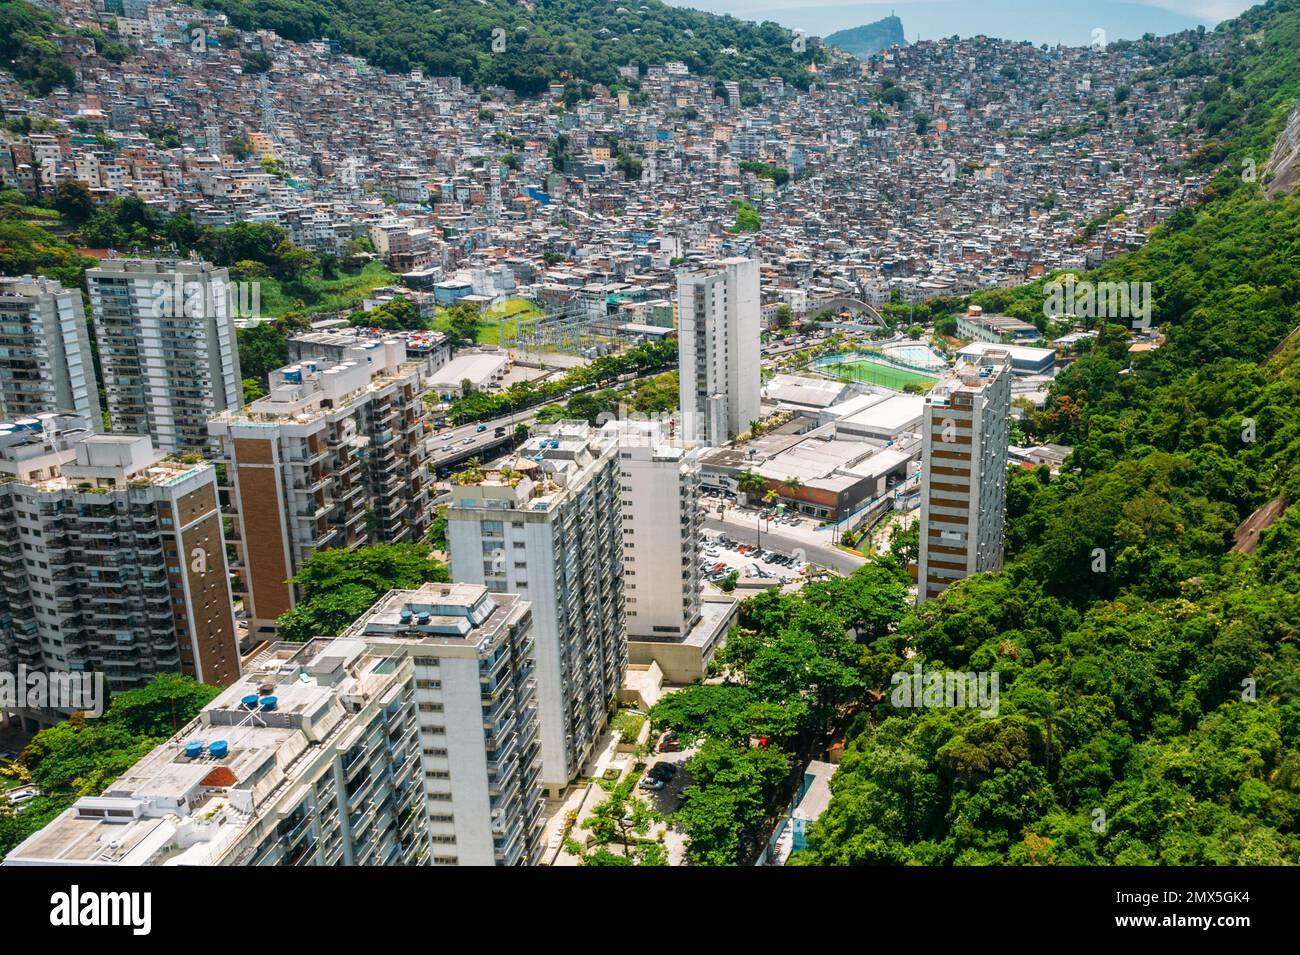 Aerial drone view of luxurious condos in Sao Conrado contrasted with the slum shanty town of Rocinha in Rio de Janeiro, Brazil Stock Photo